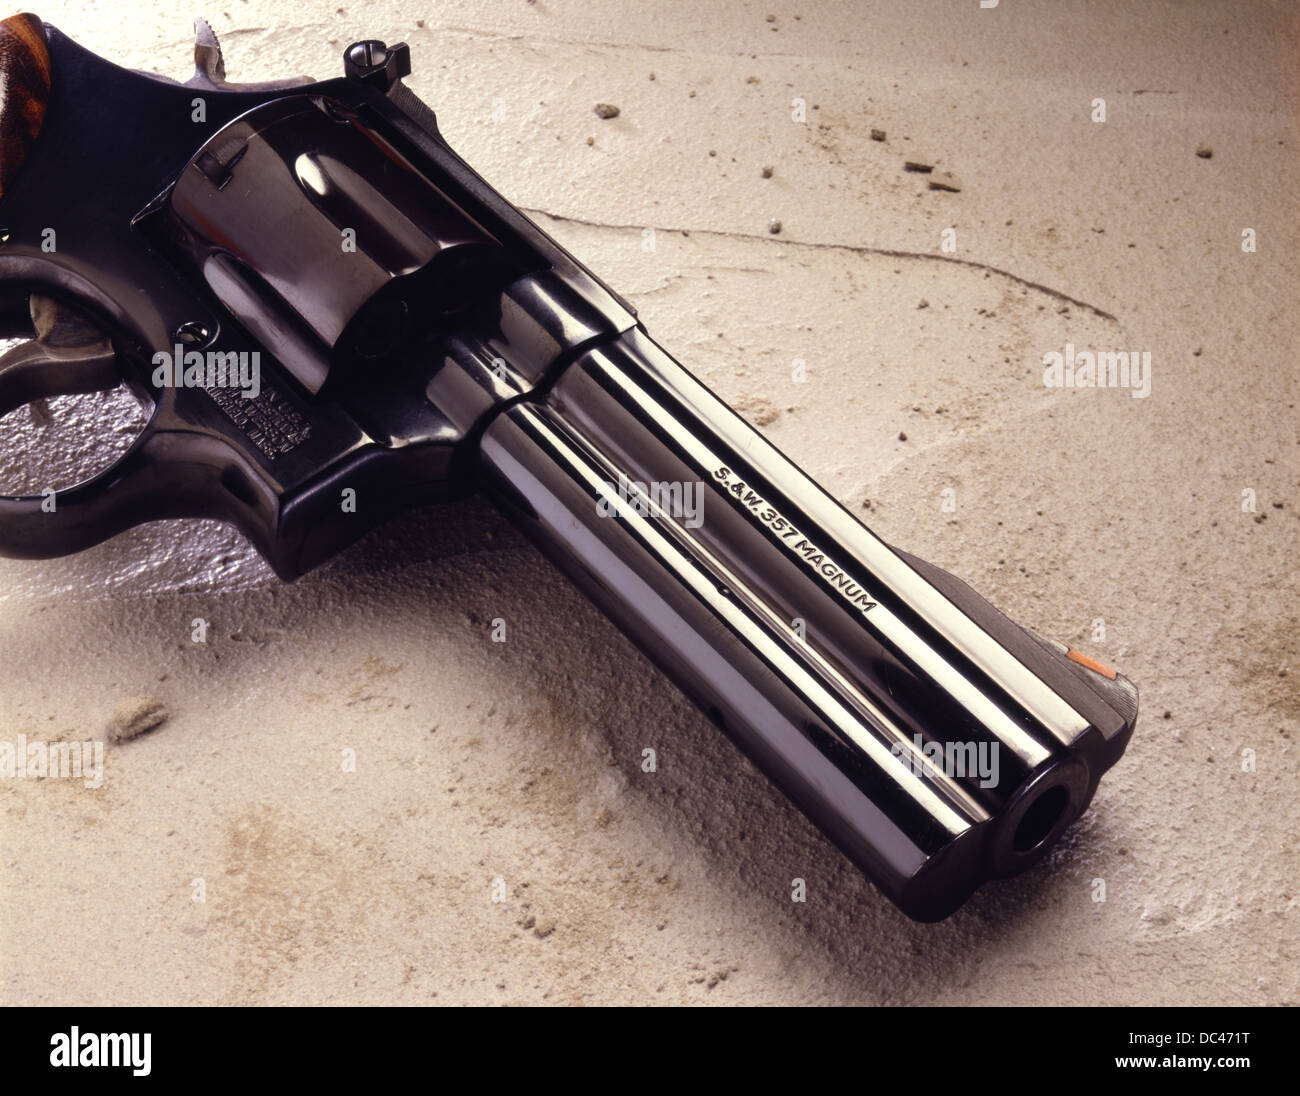 S&W 357 Magnum Stock Photo